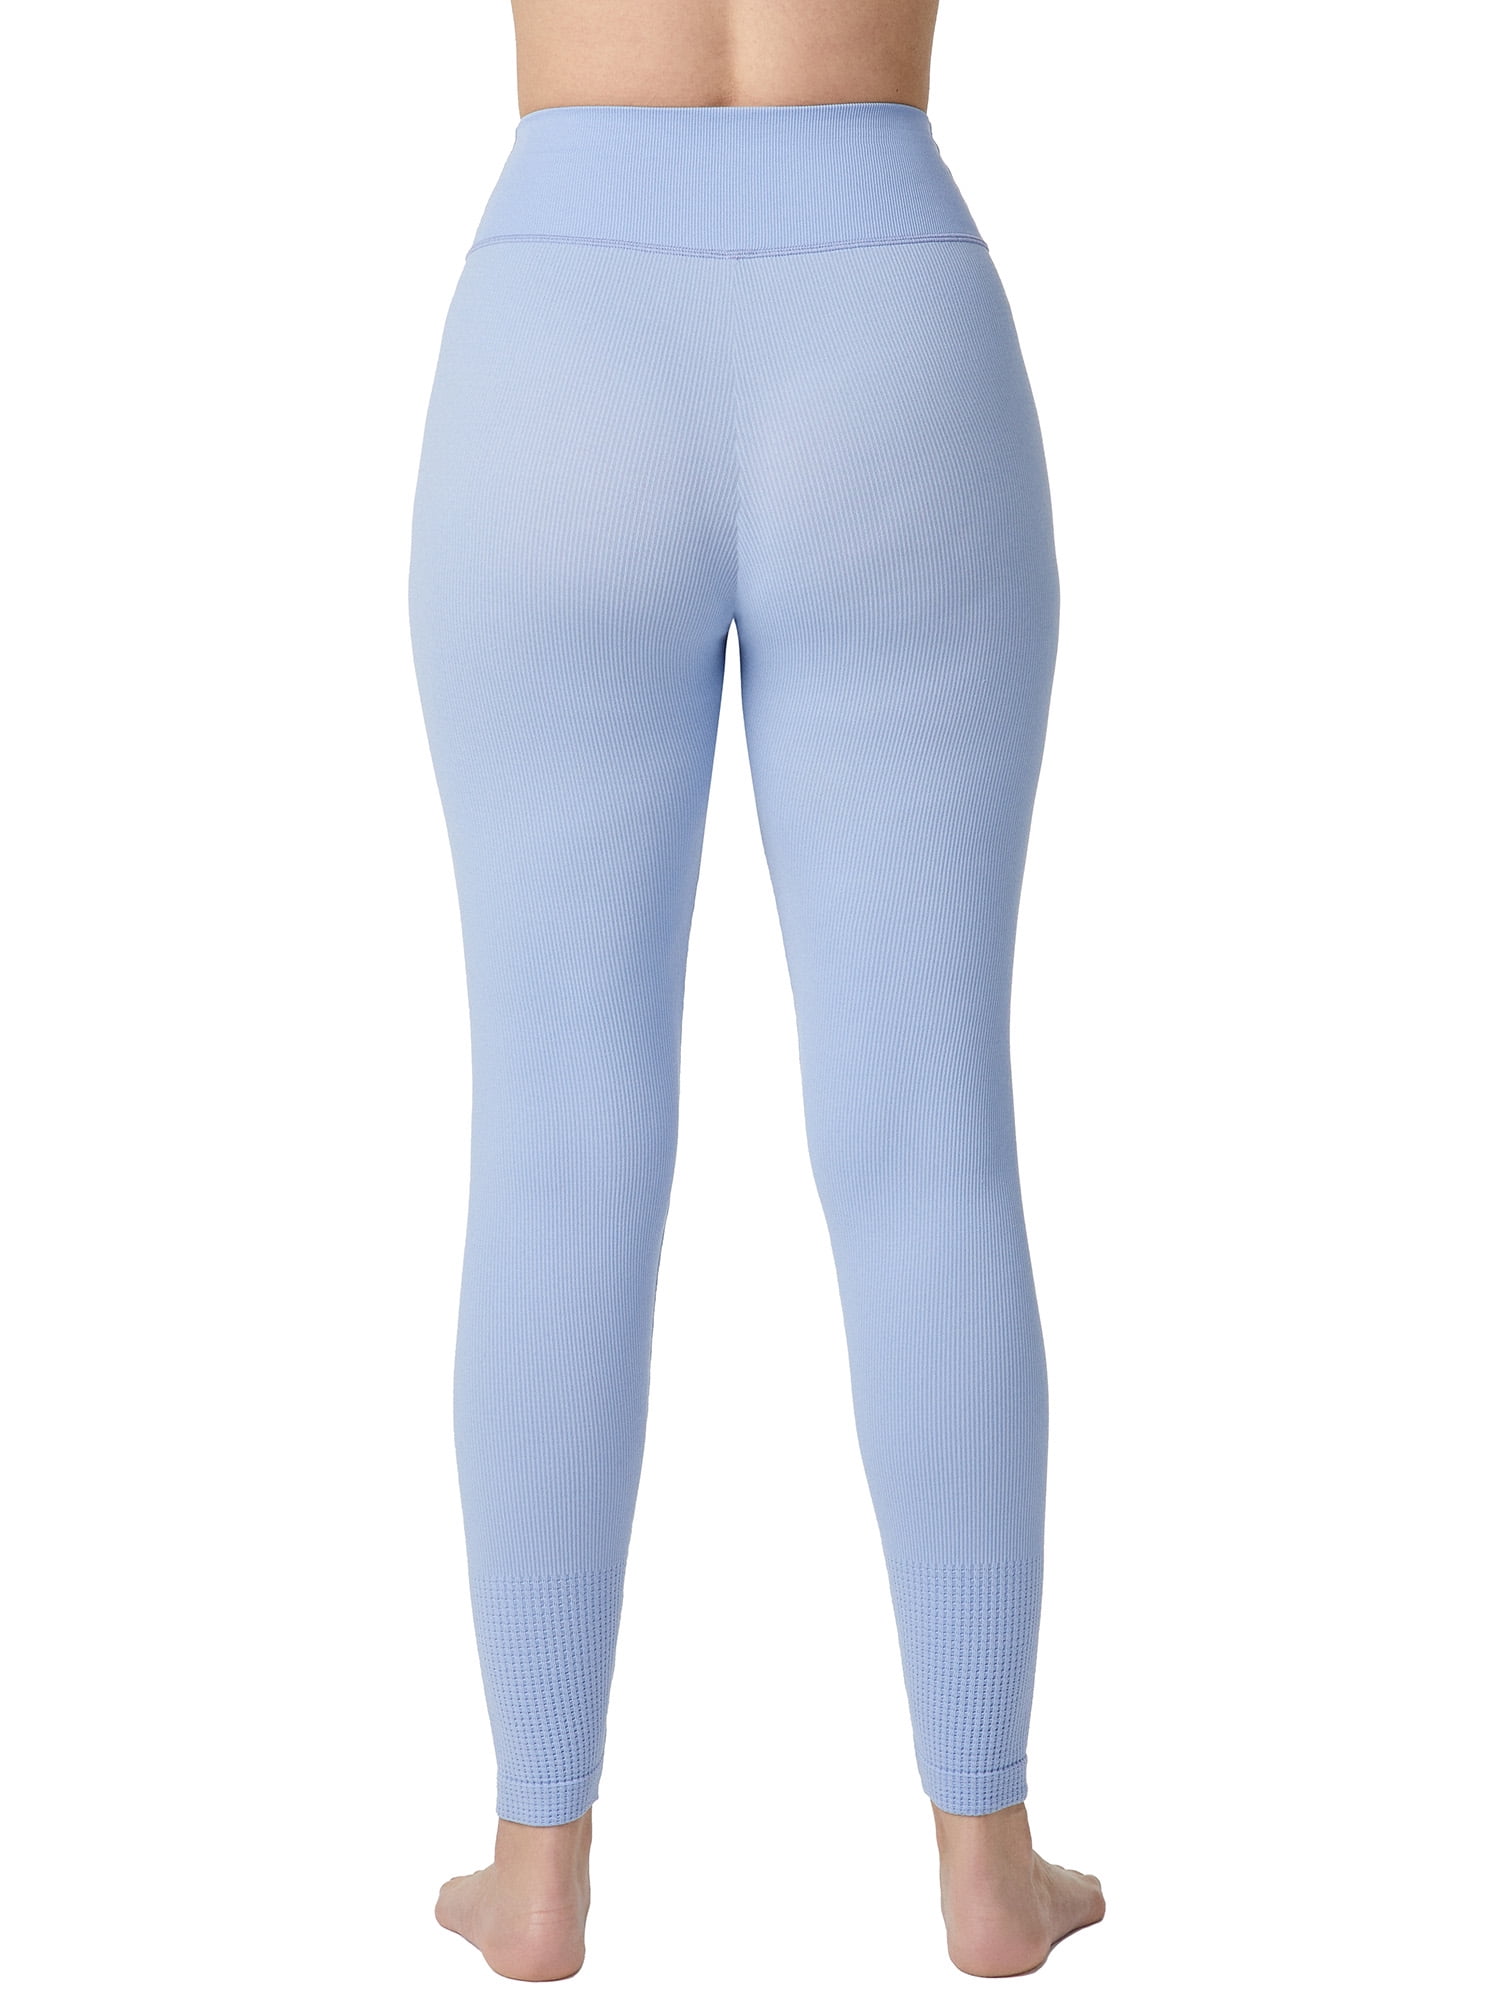 Leggings Depot High Waisted Family & Mother's Print Leggings for Women-5  Yoga-R508, Blue Cotton, Plus Size